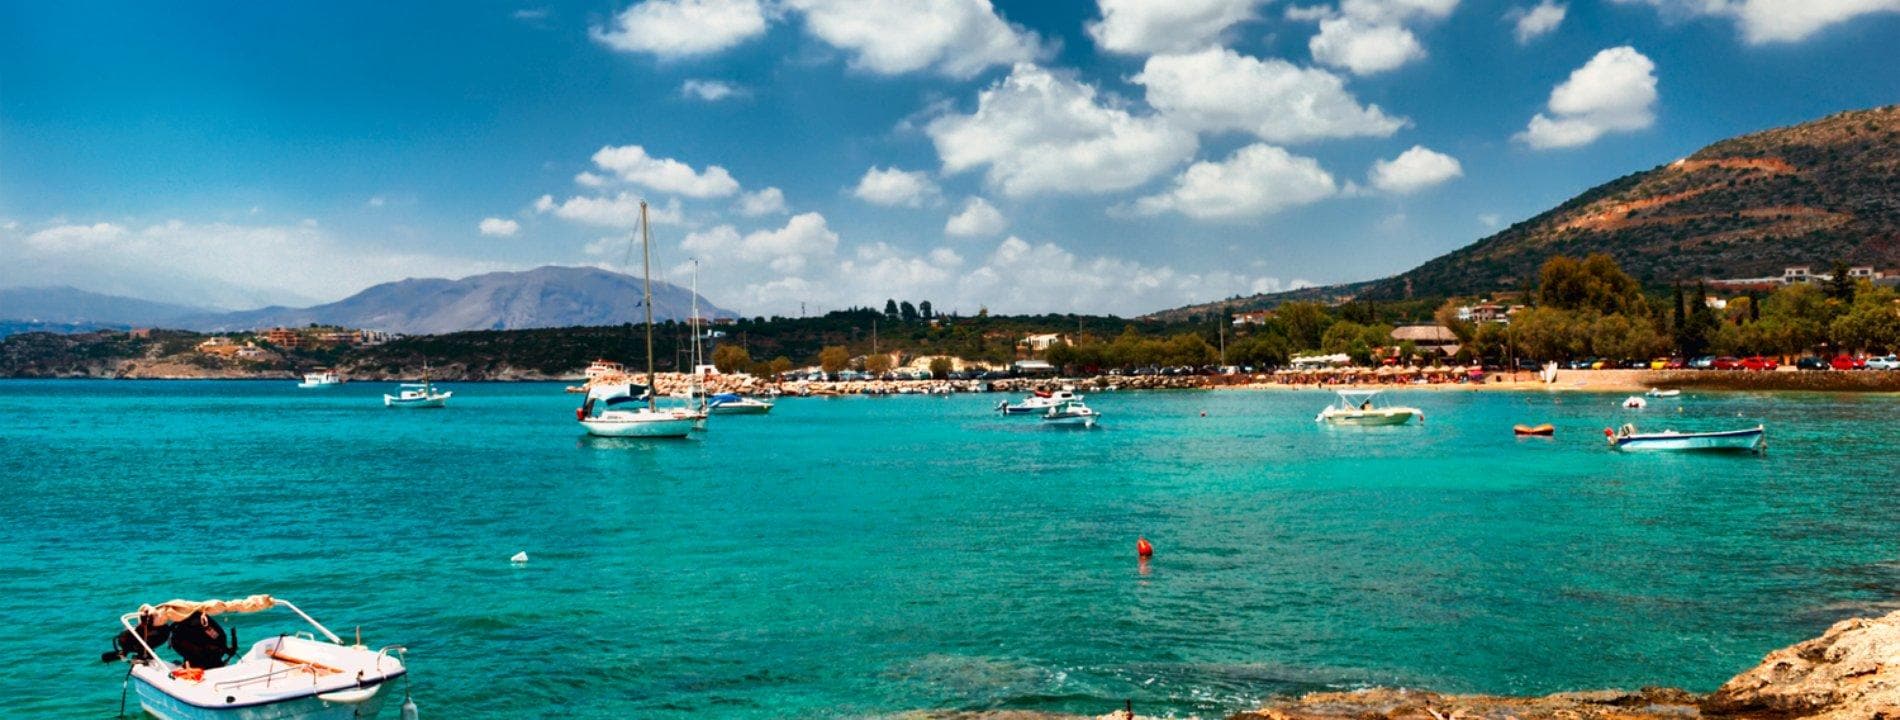 Vacanze in Grecia | Eden Viaggi